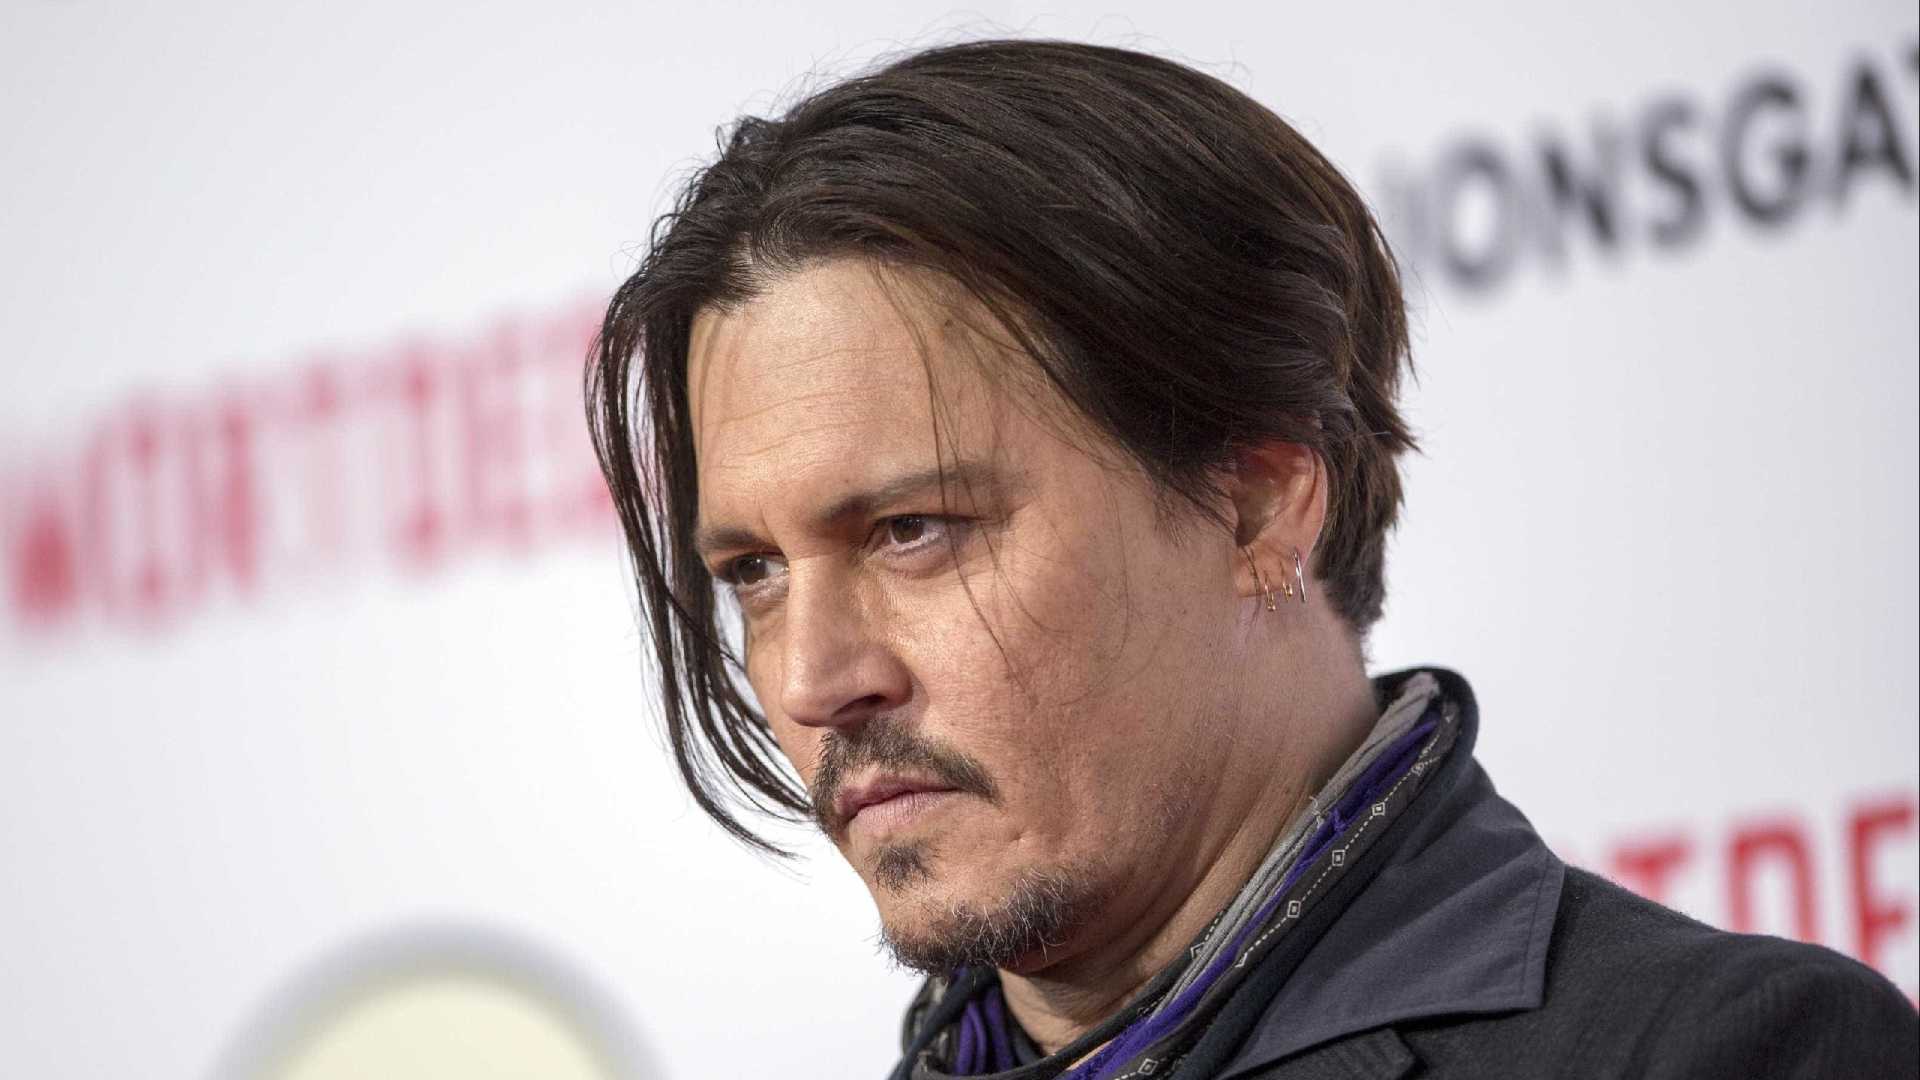 Johnny Depp se drogou com filha; Veja mais revelações polêmicas de processo